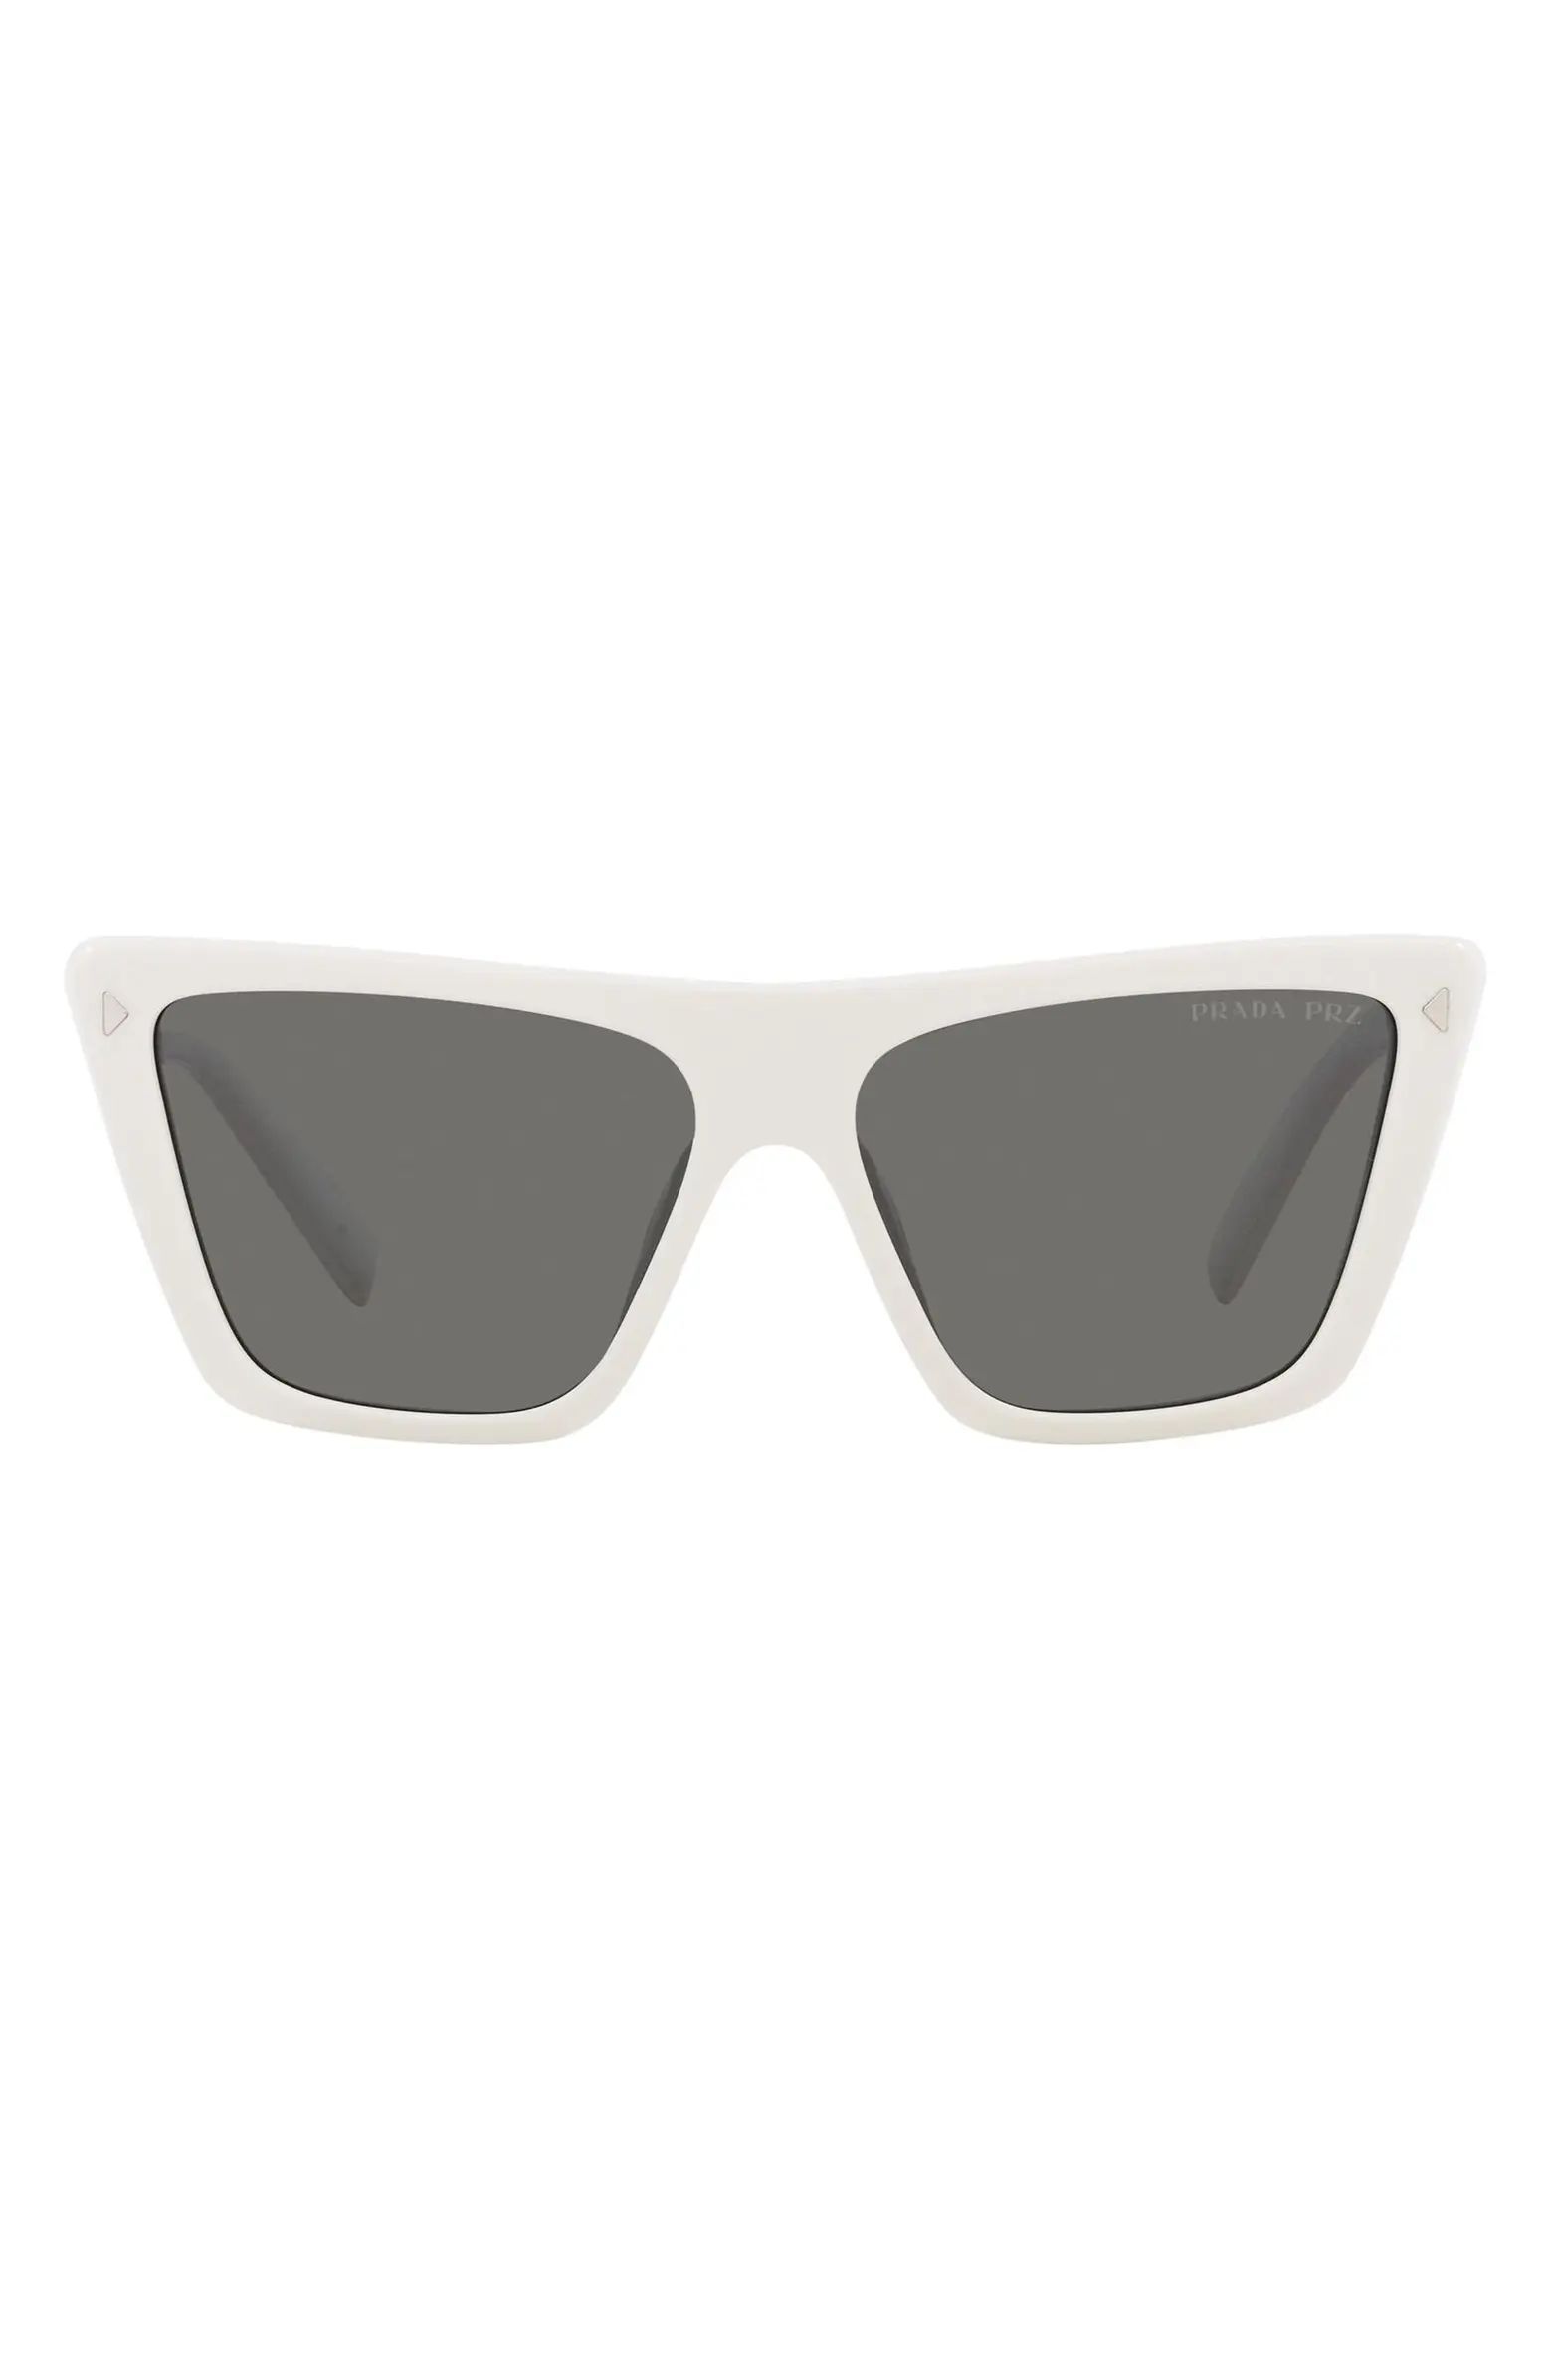 Prada 56mm Polarized Square Sunglasses | Nordstrom | Nordstrom